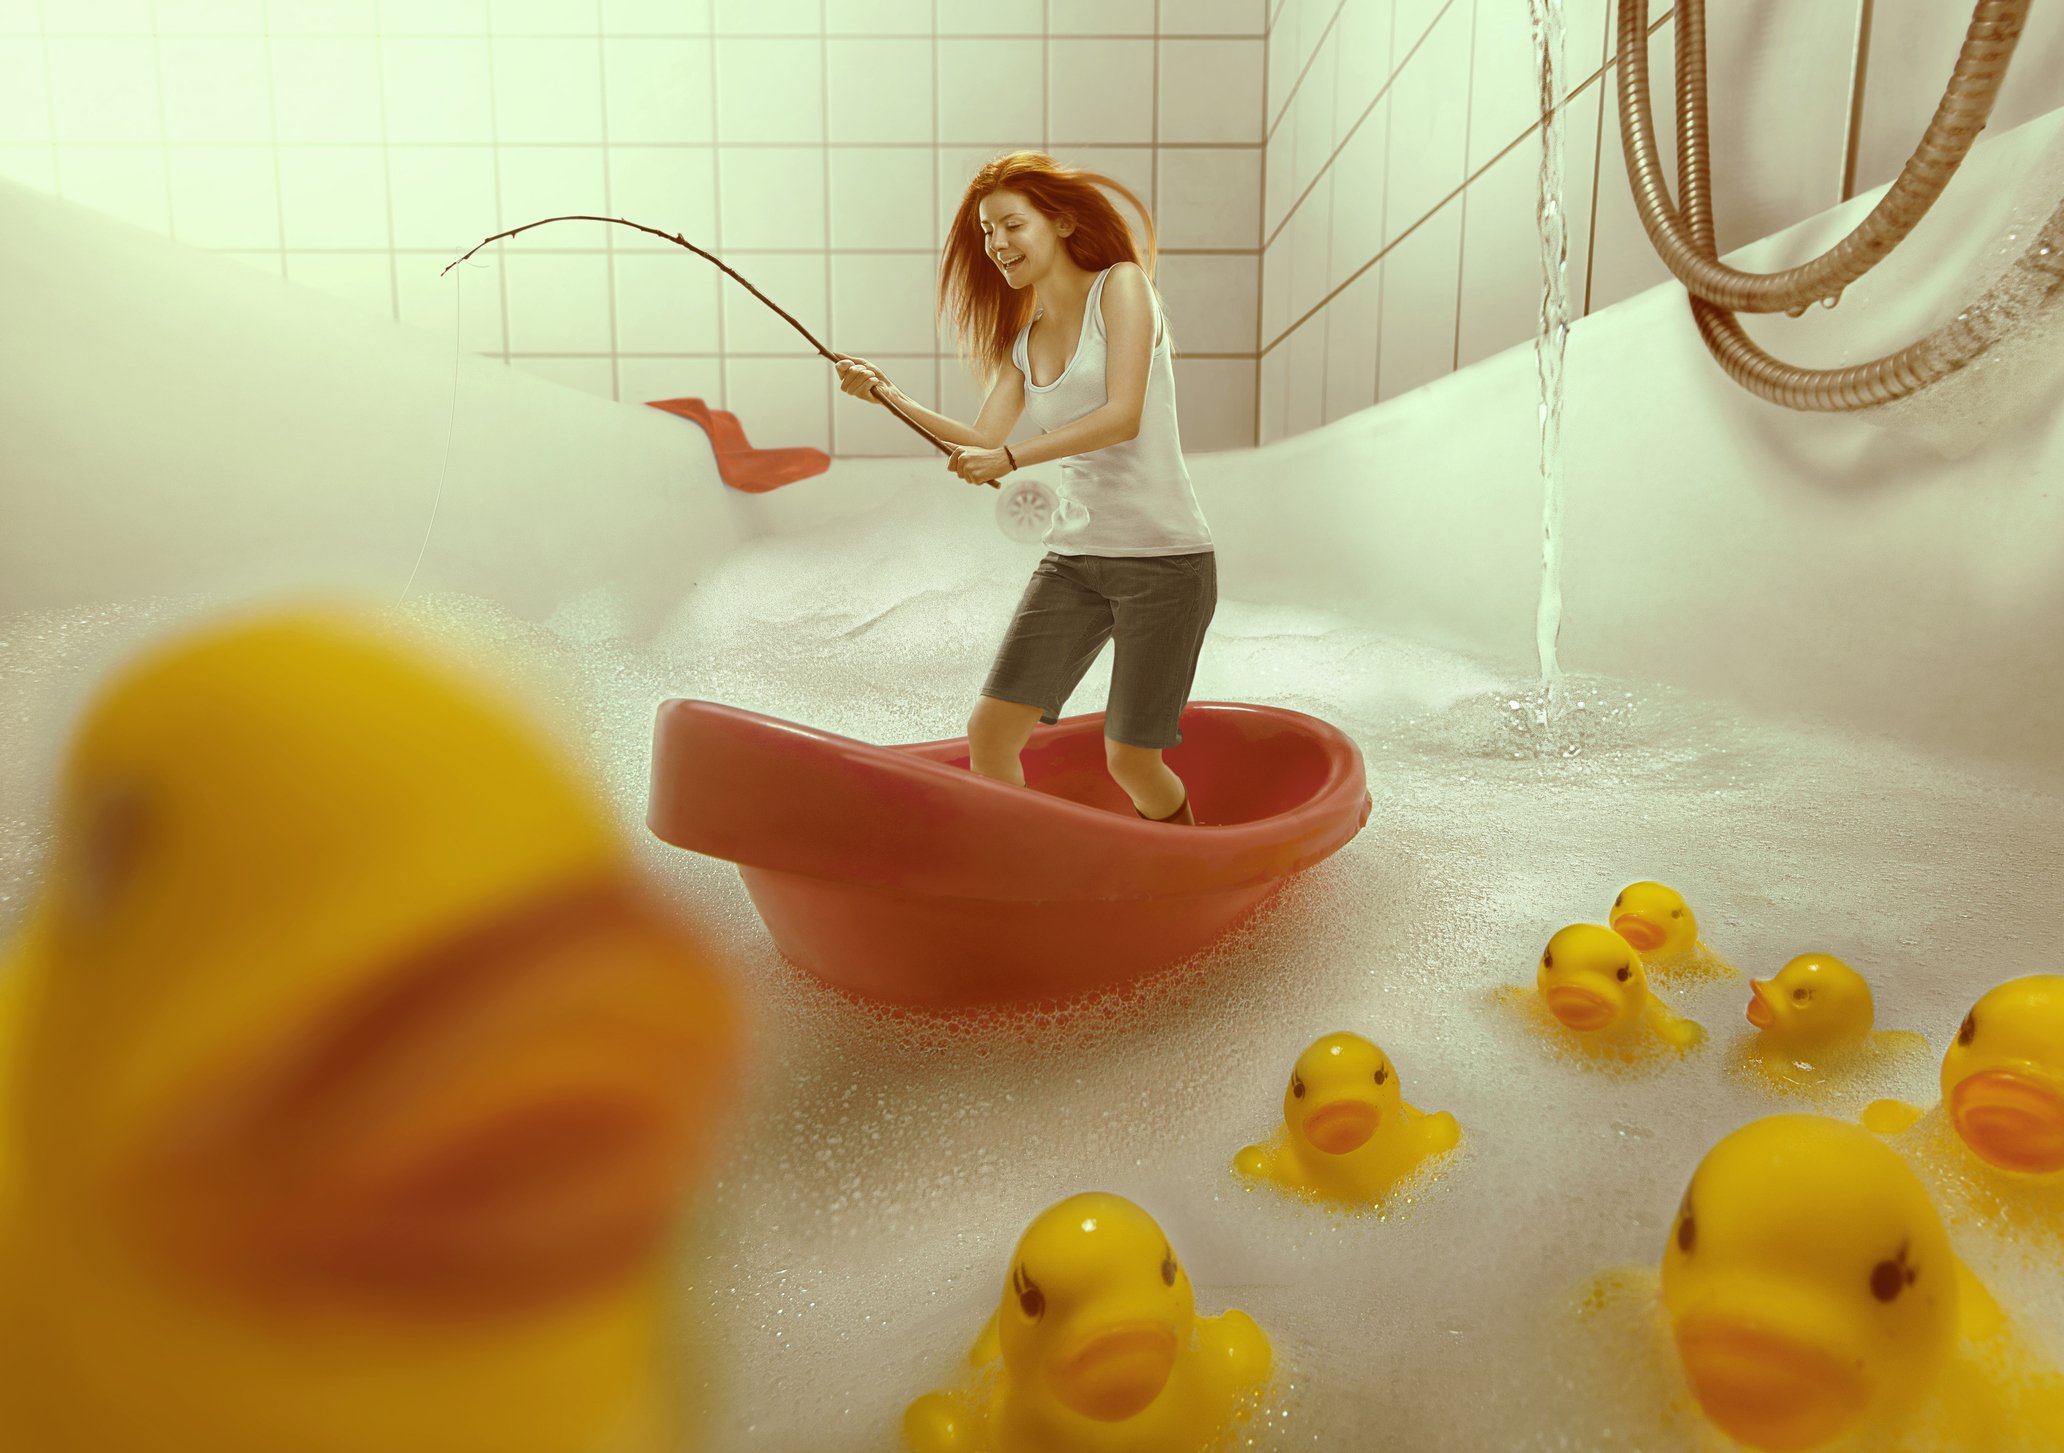 Una mujer pescando en una bañera